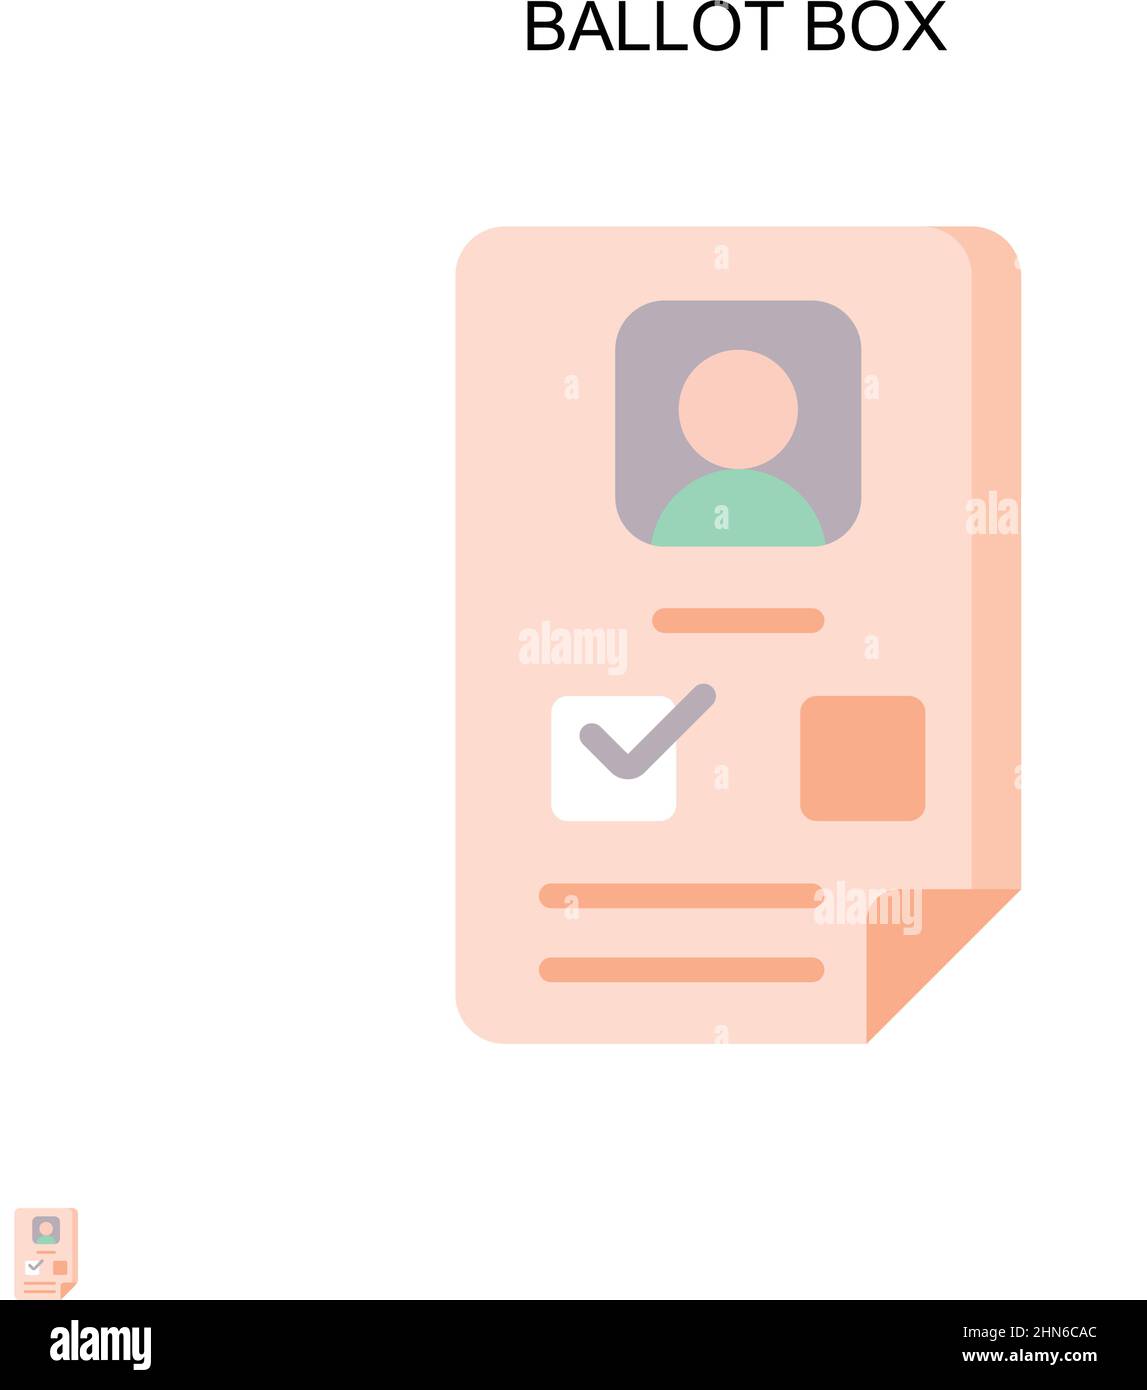 Icona vettoriale semplice della casella di voto. Modello di disegno del simbolo di illustrazione per l'elemento dell'interfaccia utente mobile Web. Illustrazione Vettoriale